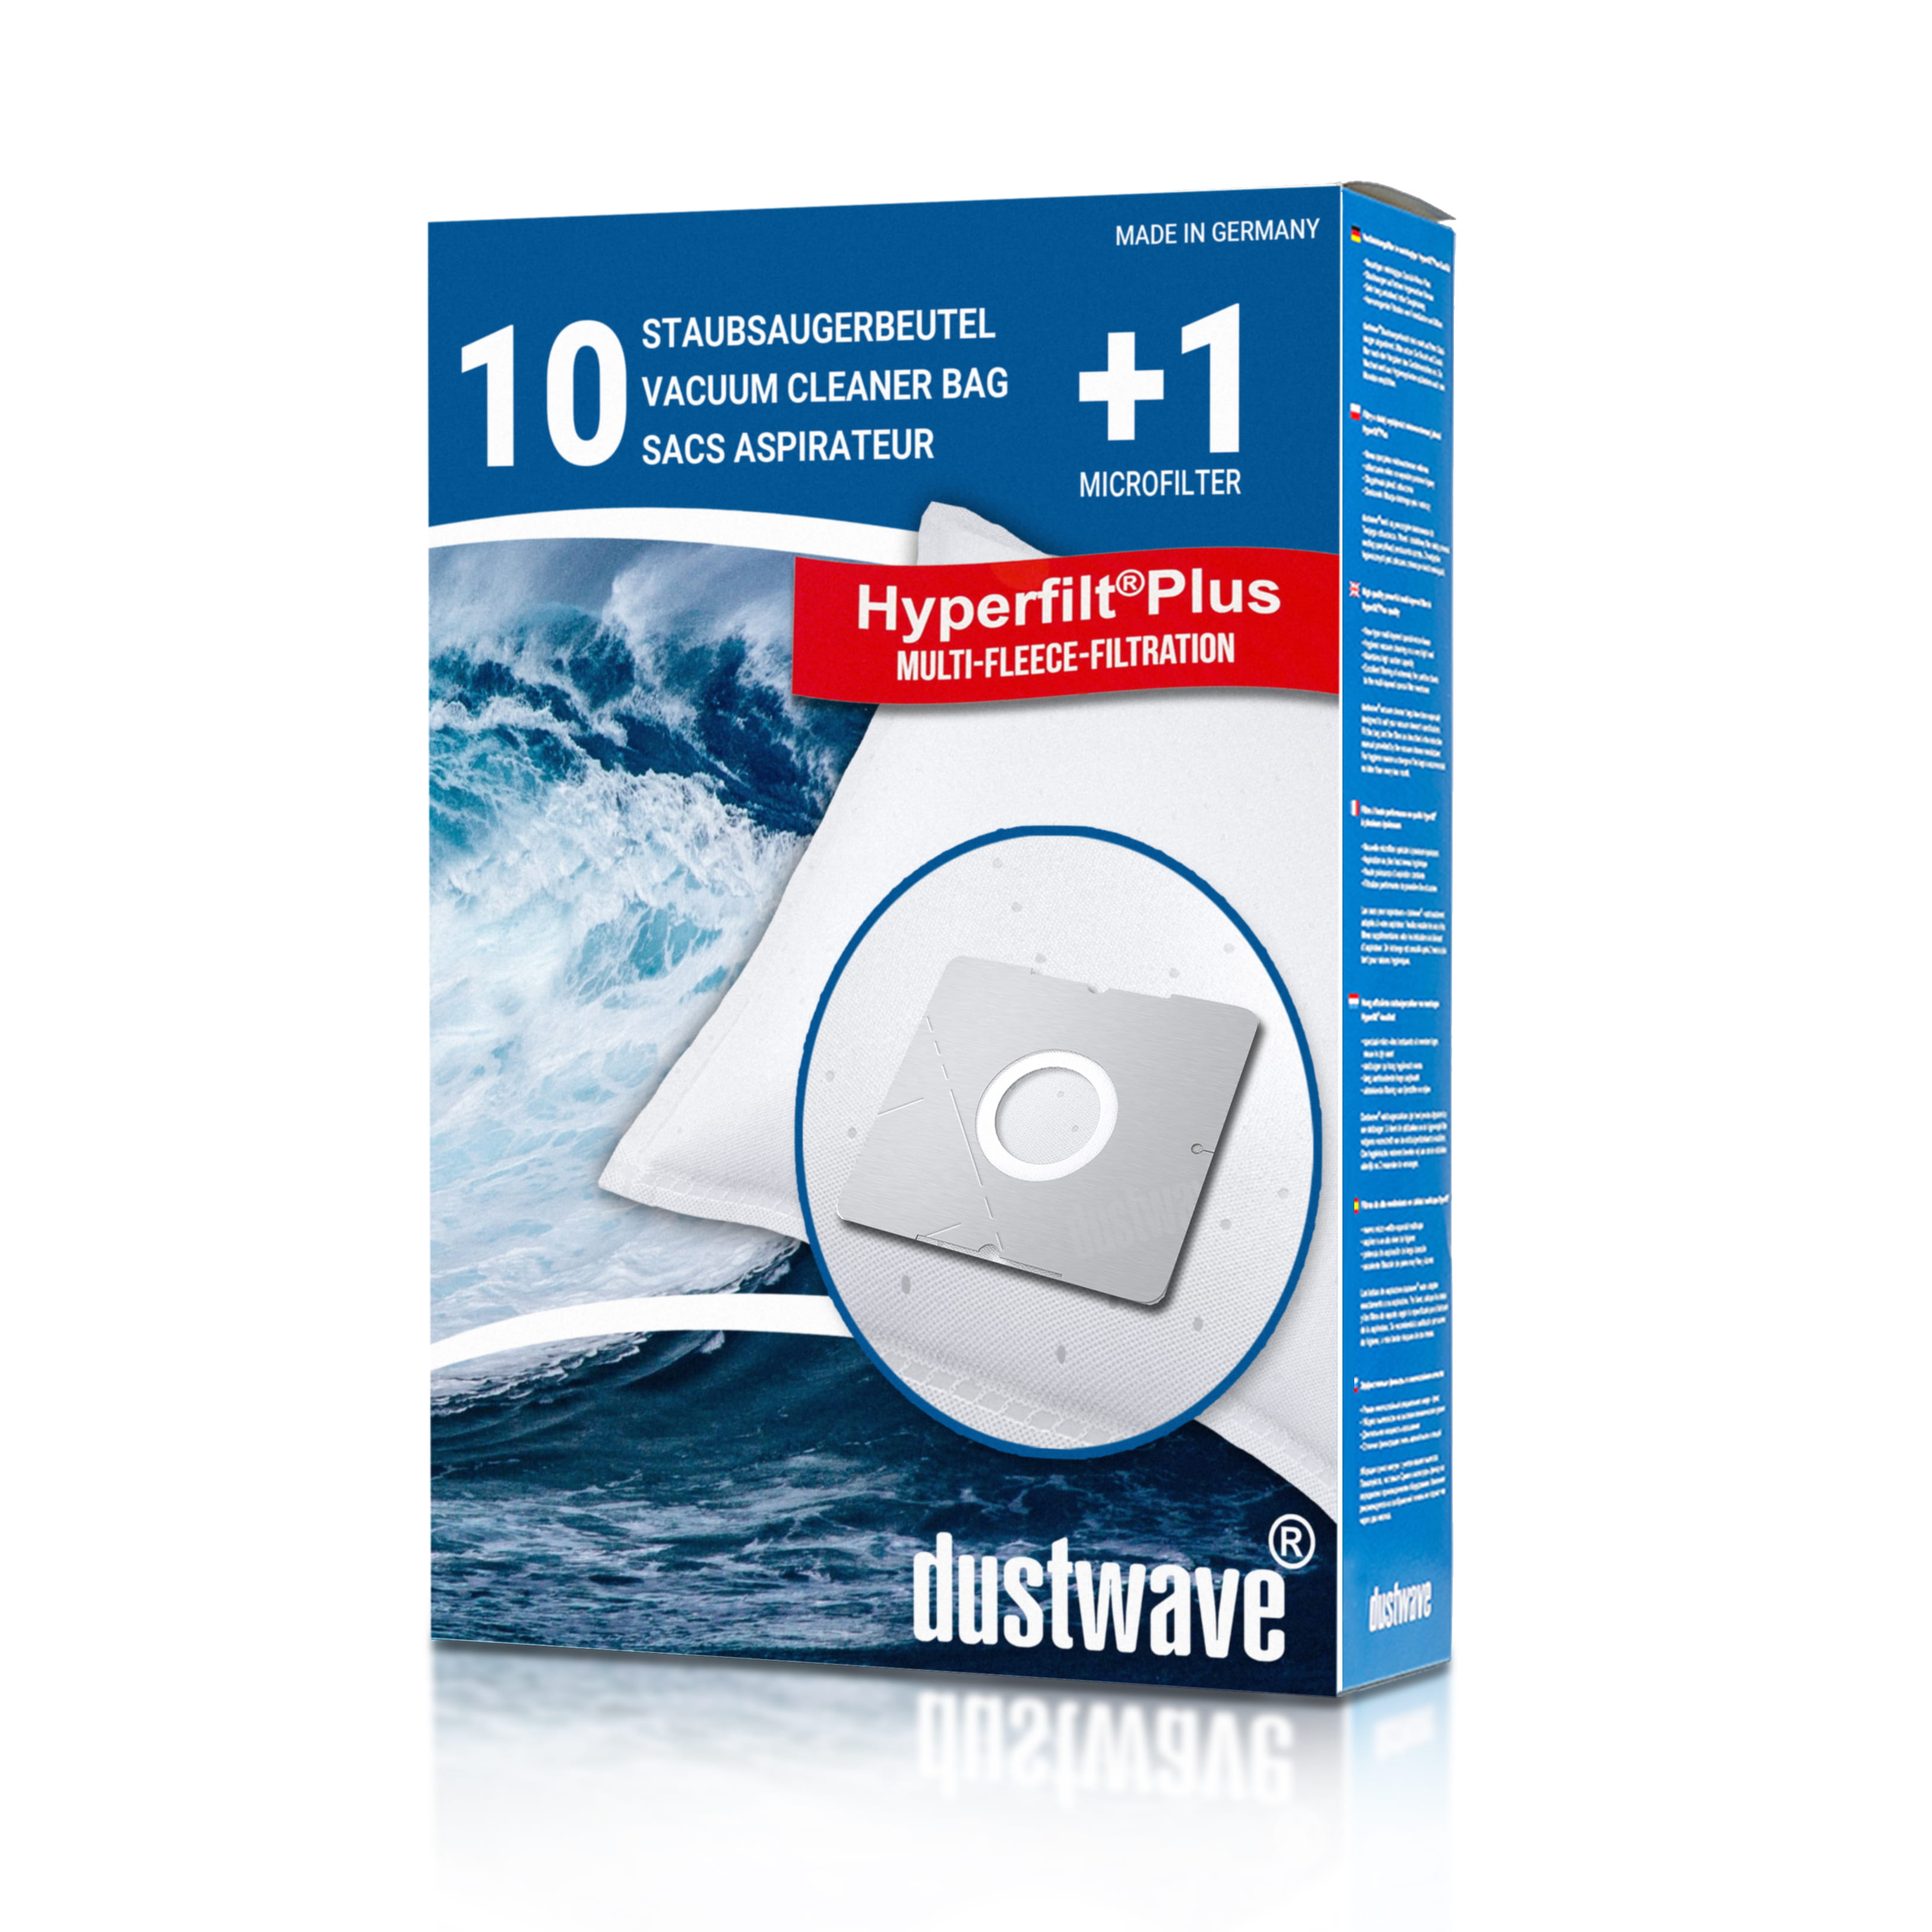 Dustwave® 10 Staubsaugerbeutel für Emerio VE-110452.2 - hocheffizient mit Hygieneverschluss - Made in Germany